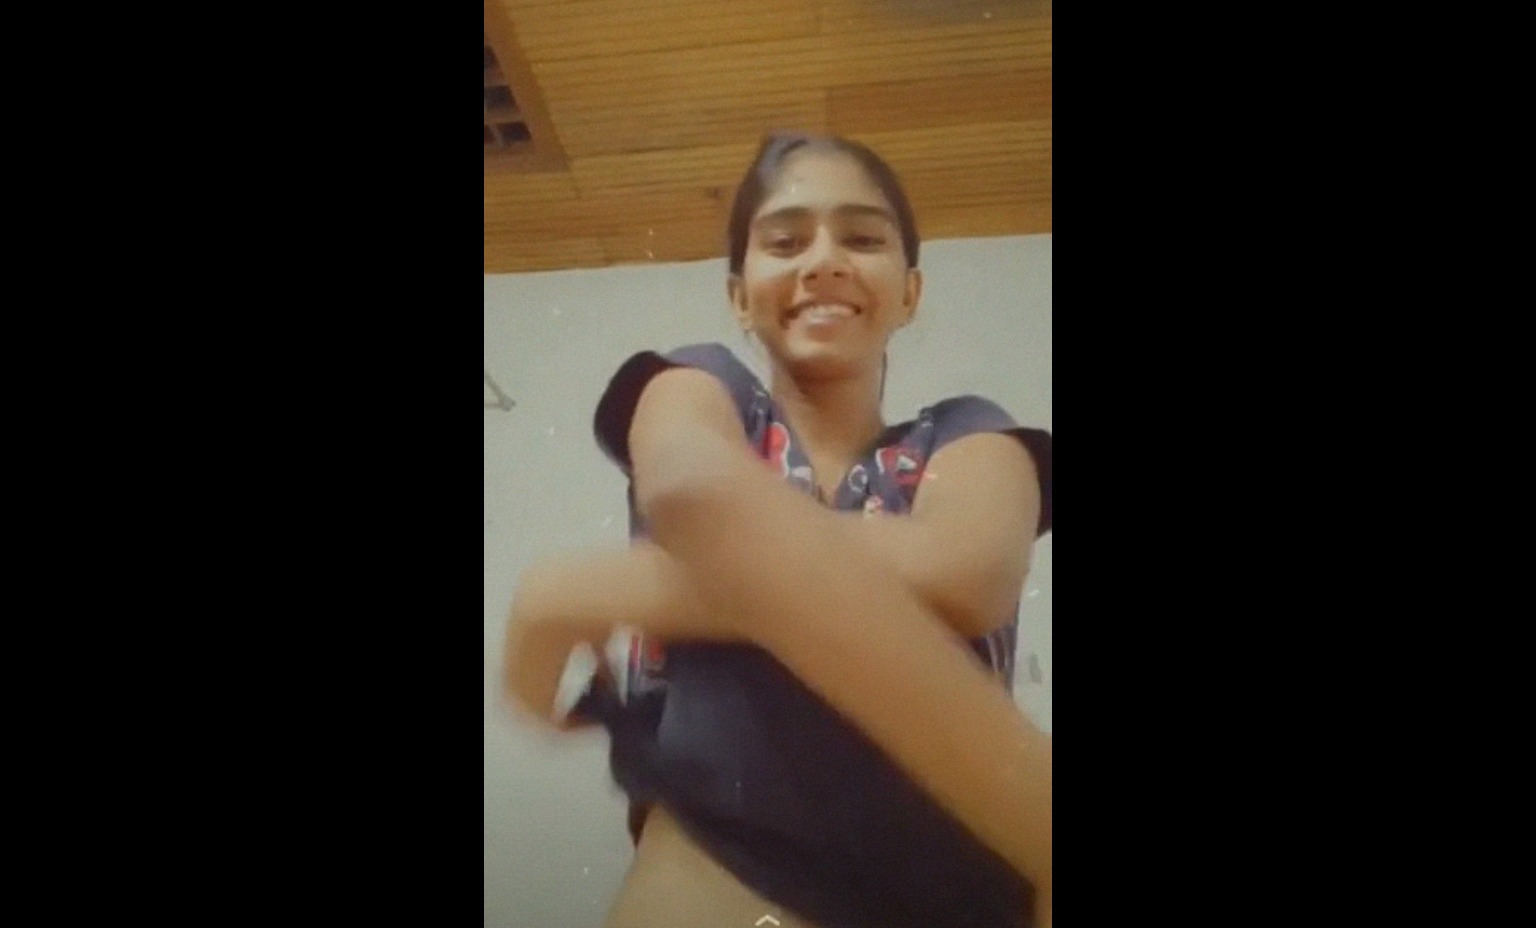 Strip Teen Girlfriend - Strip video of Indian teenage girl